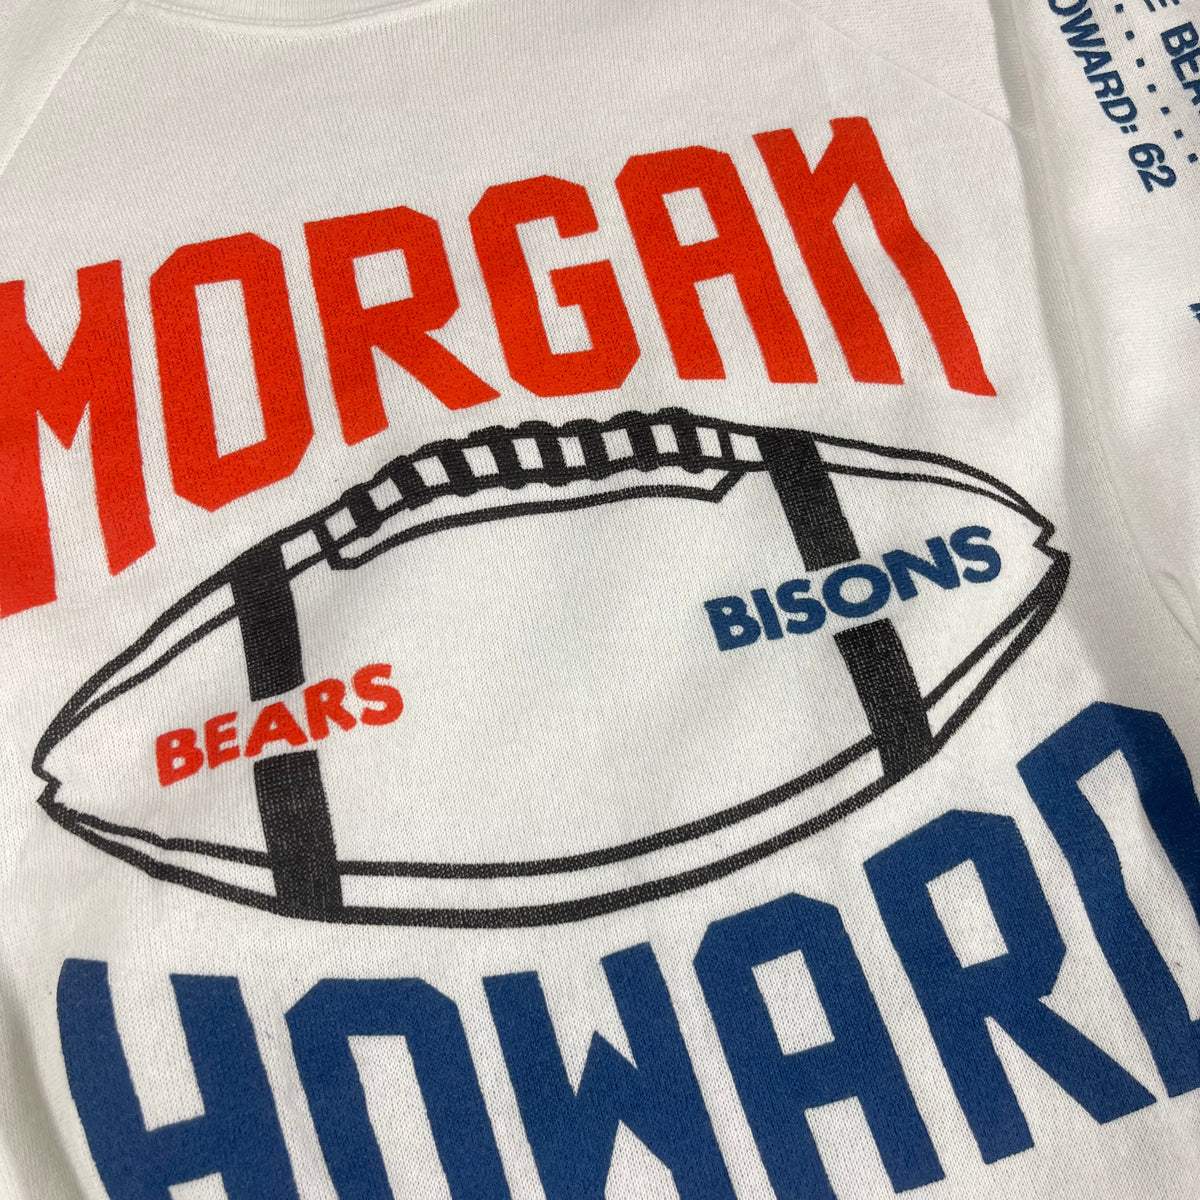 Vintage Howard University &quot;Bisons&quot; Vs. Morgan Bears Raglan Sweatshirt